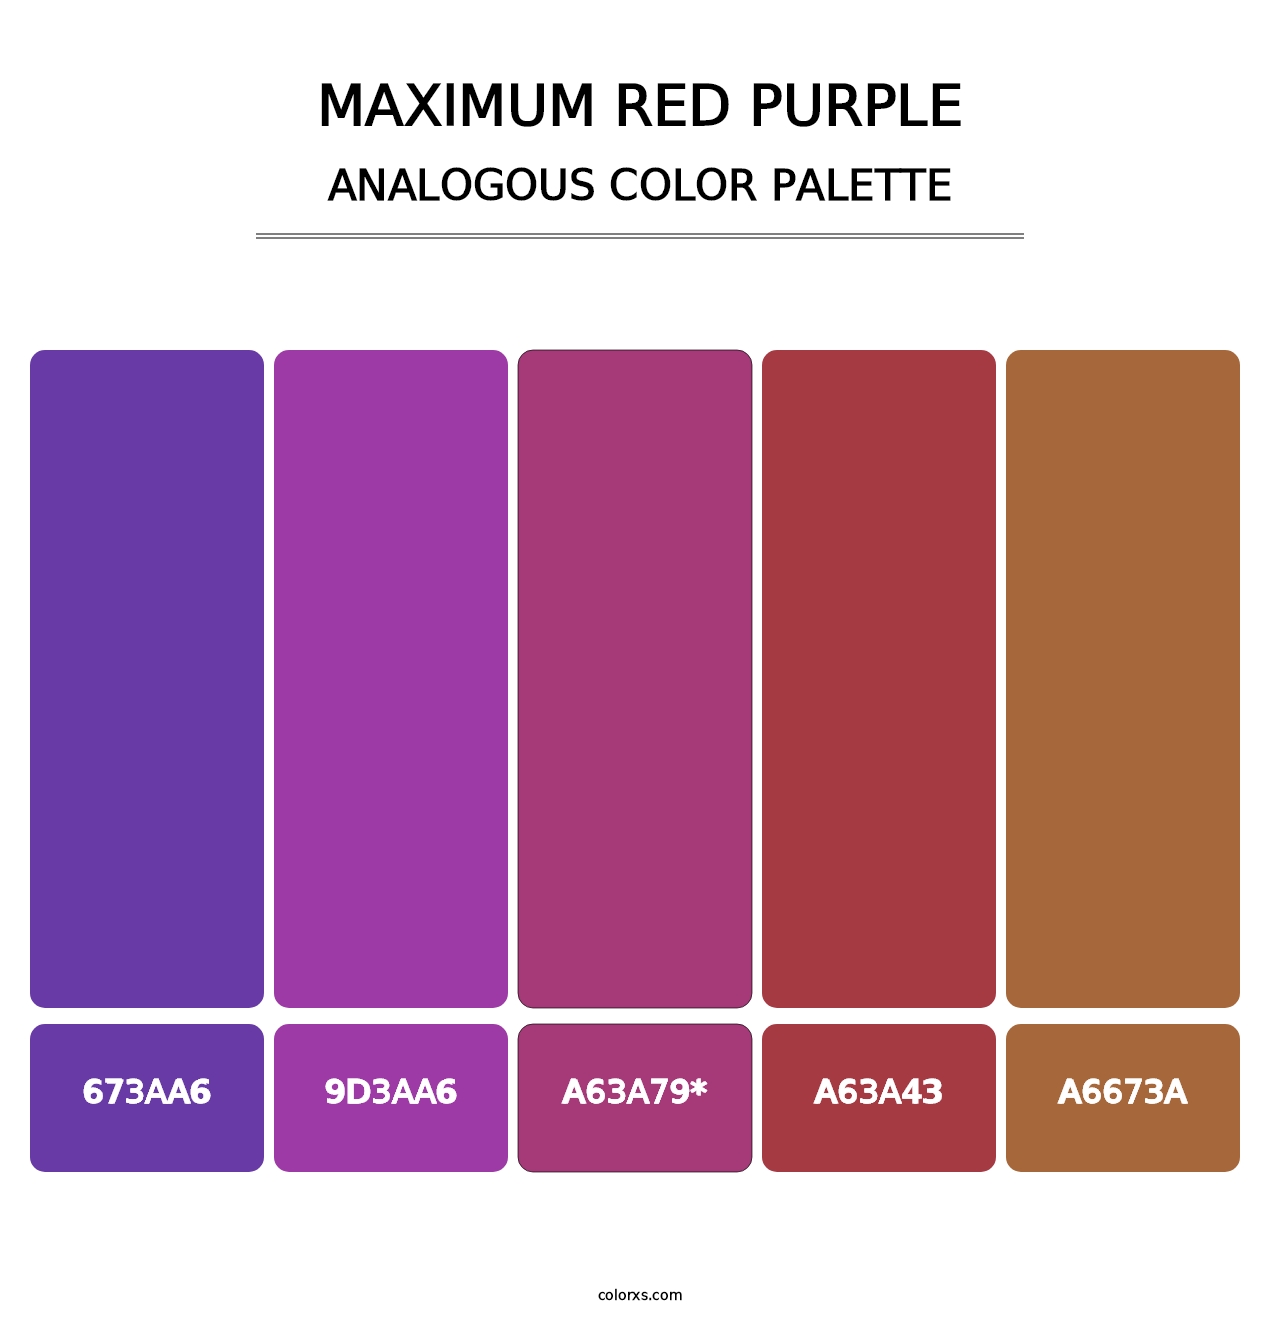 Maximum Red Purple - Analogous Color Palette